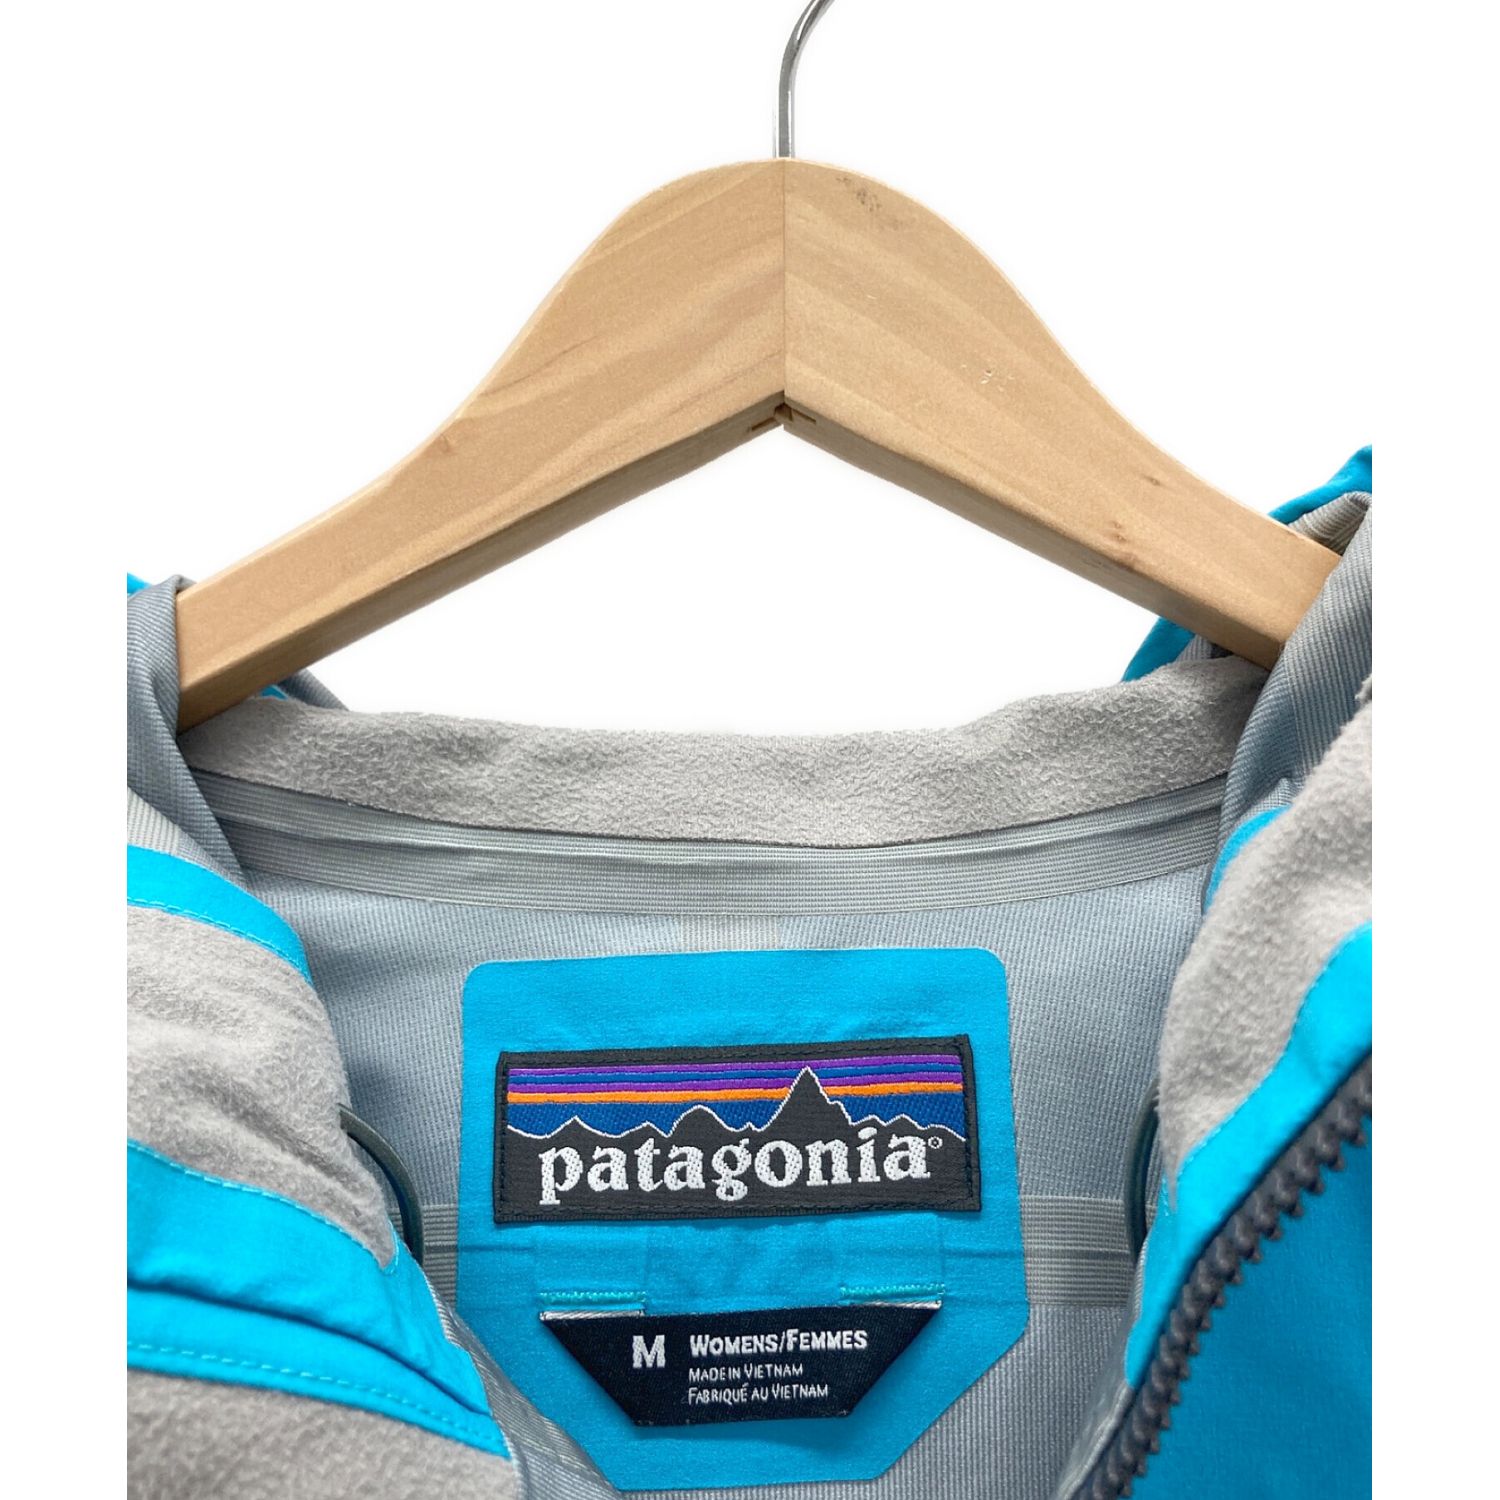 Patagonia (パタゴニア) アウトドアジャケット レディース SIZE M